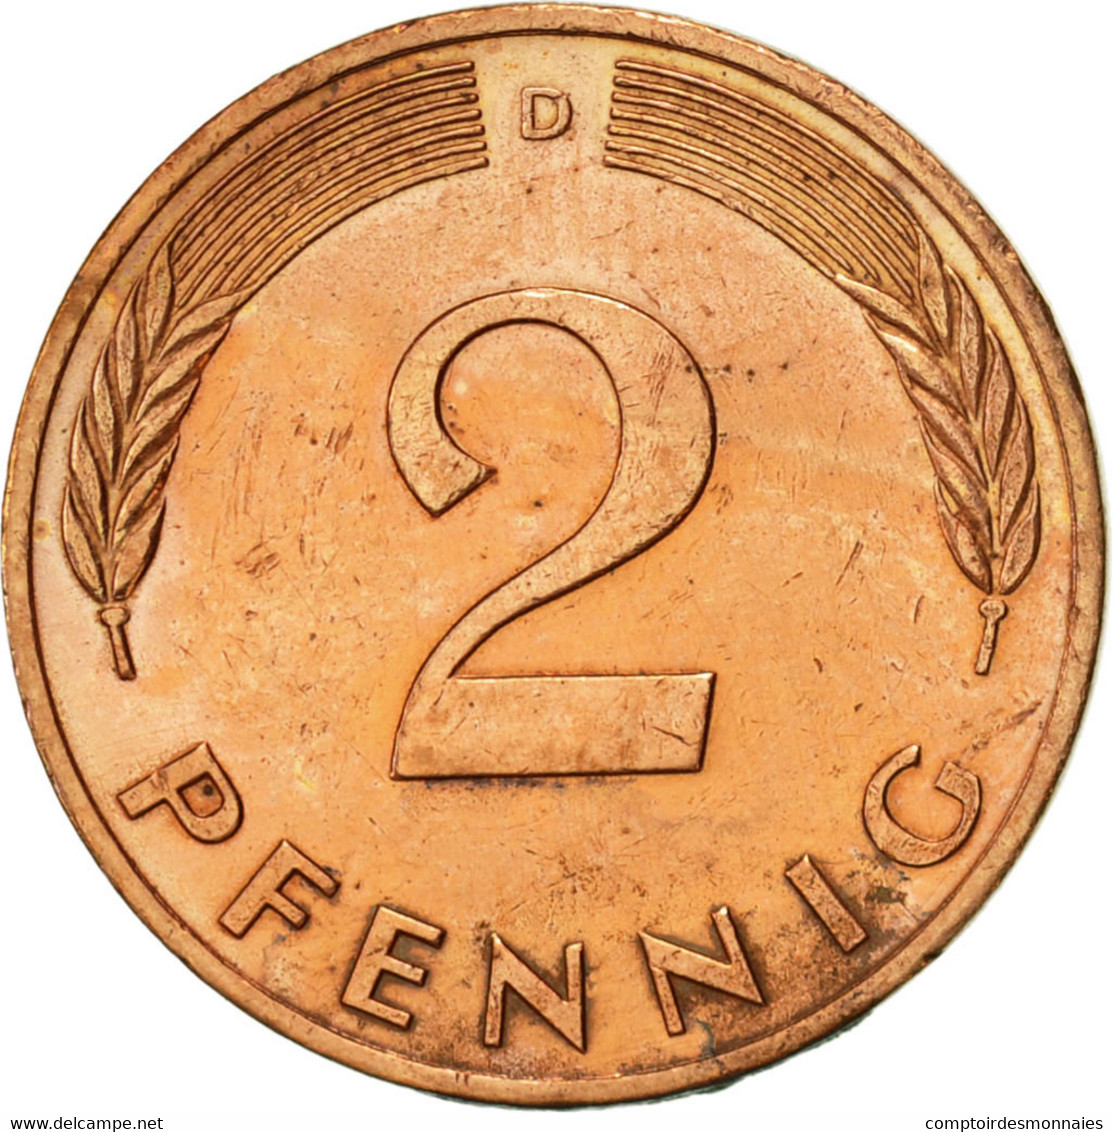 Monnaie, République Fédérale Allemande, 2 Pfennig, 1990, Munich, SUP, Copper - 2 Pfennig